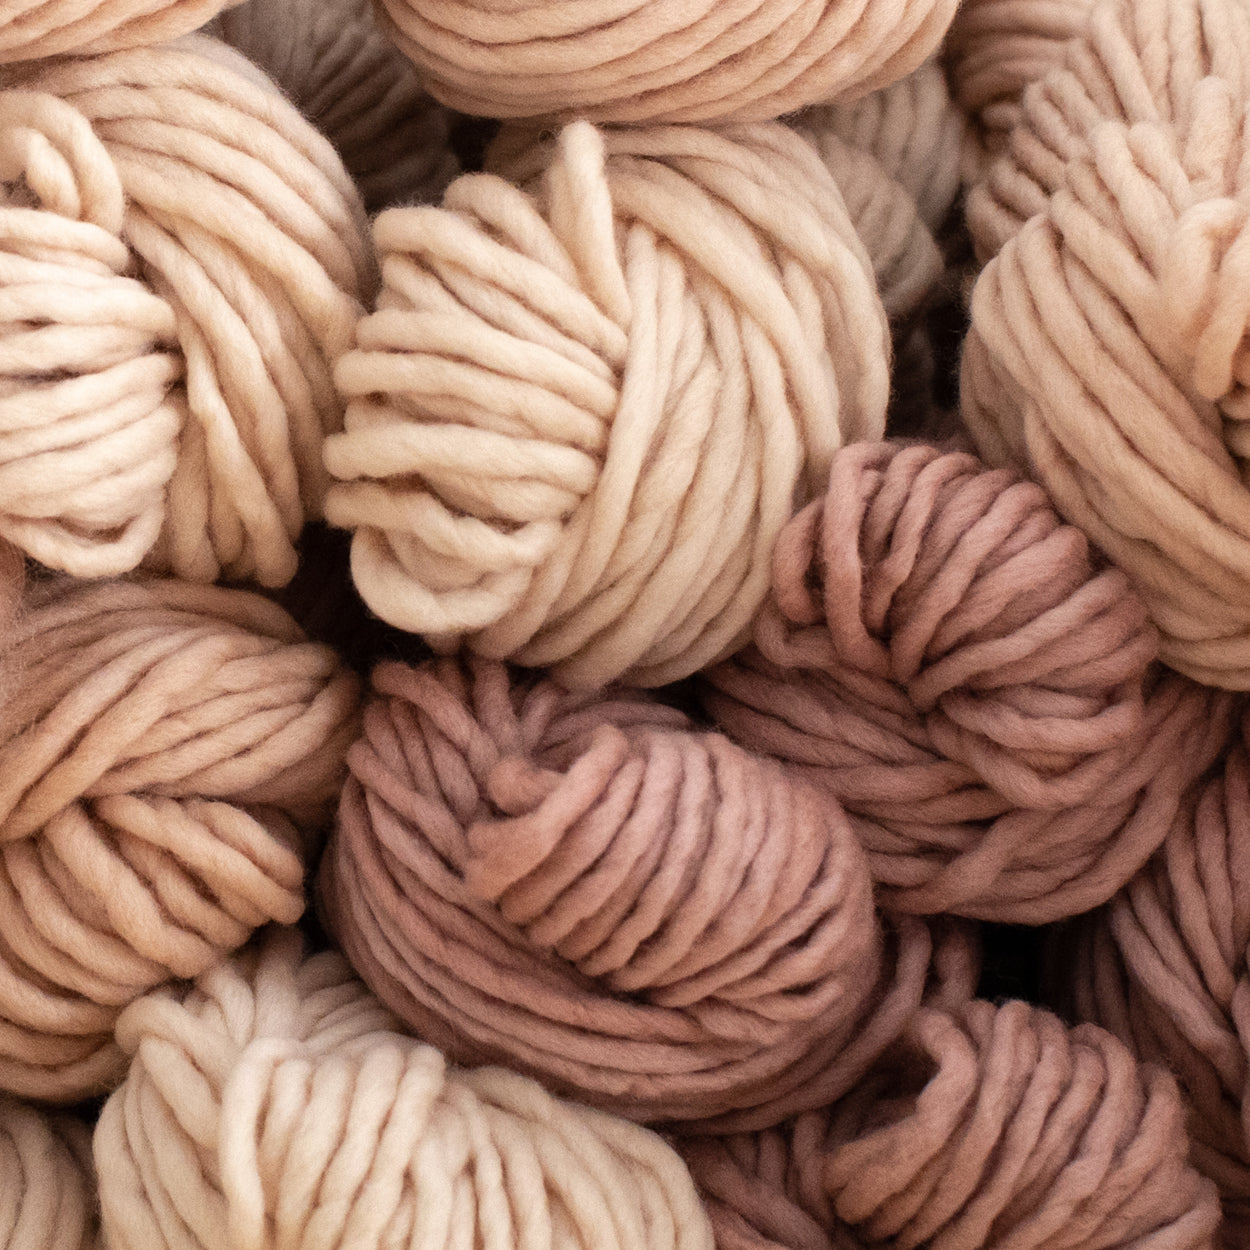 Camellia Fiber Company - Yarn, Knitting, Handspun Yarns